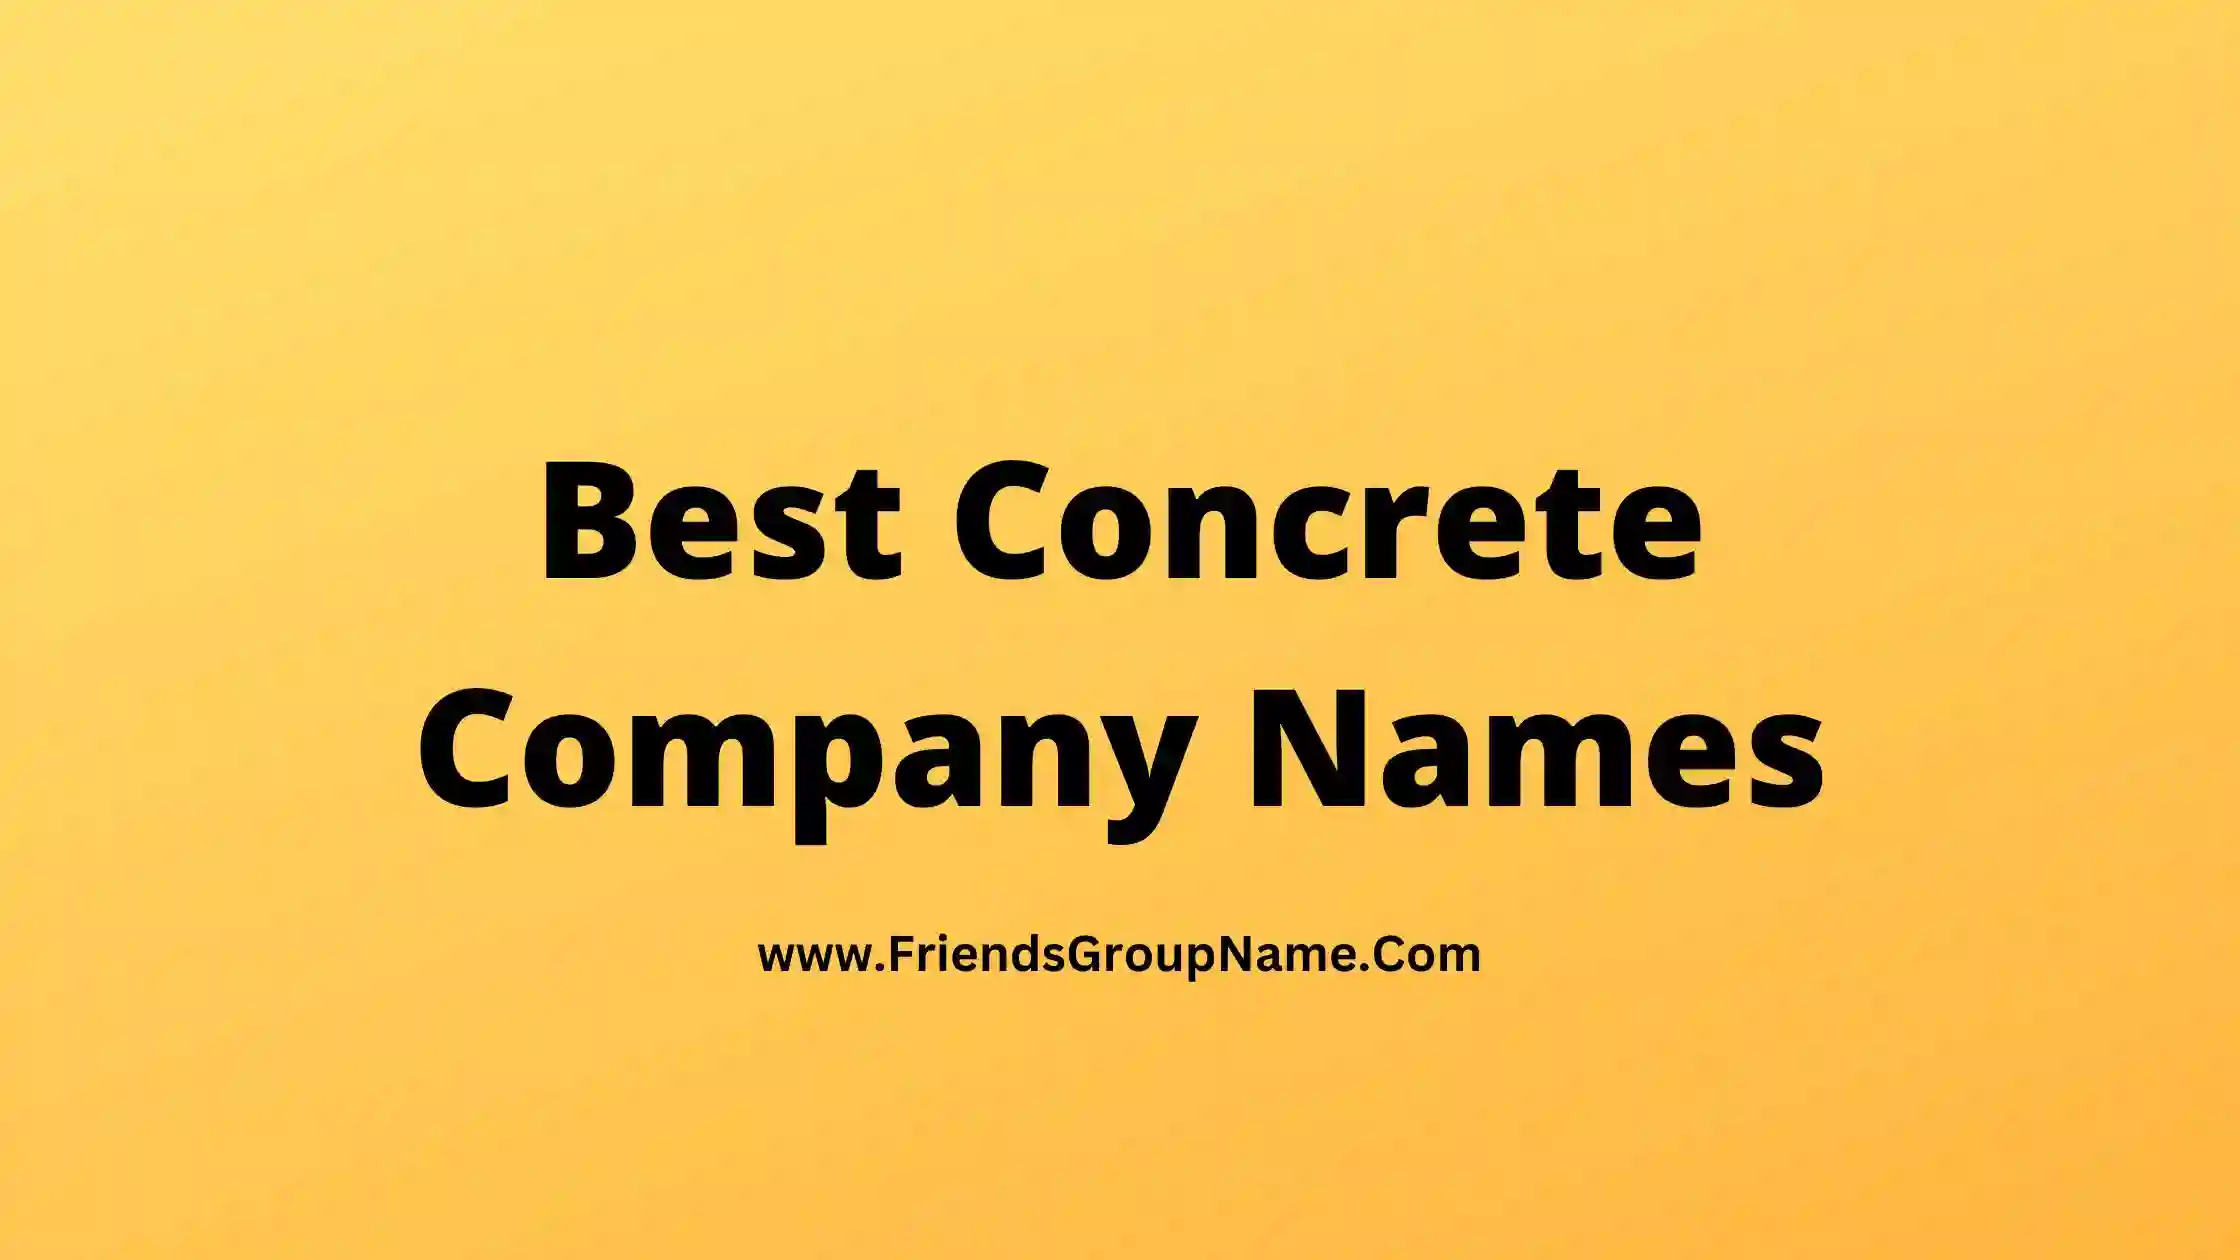 Best Concrete Company Names